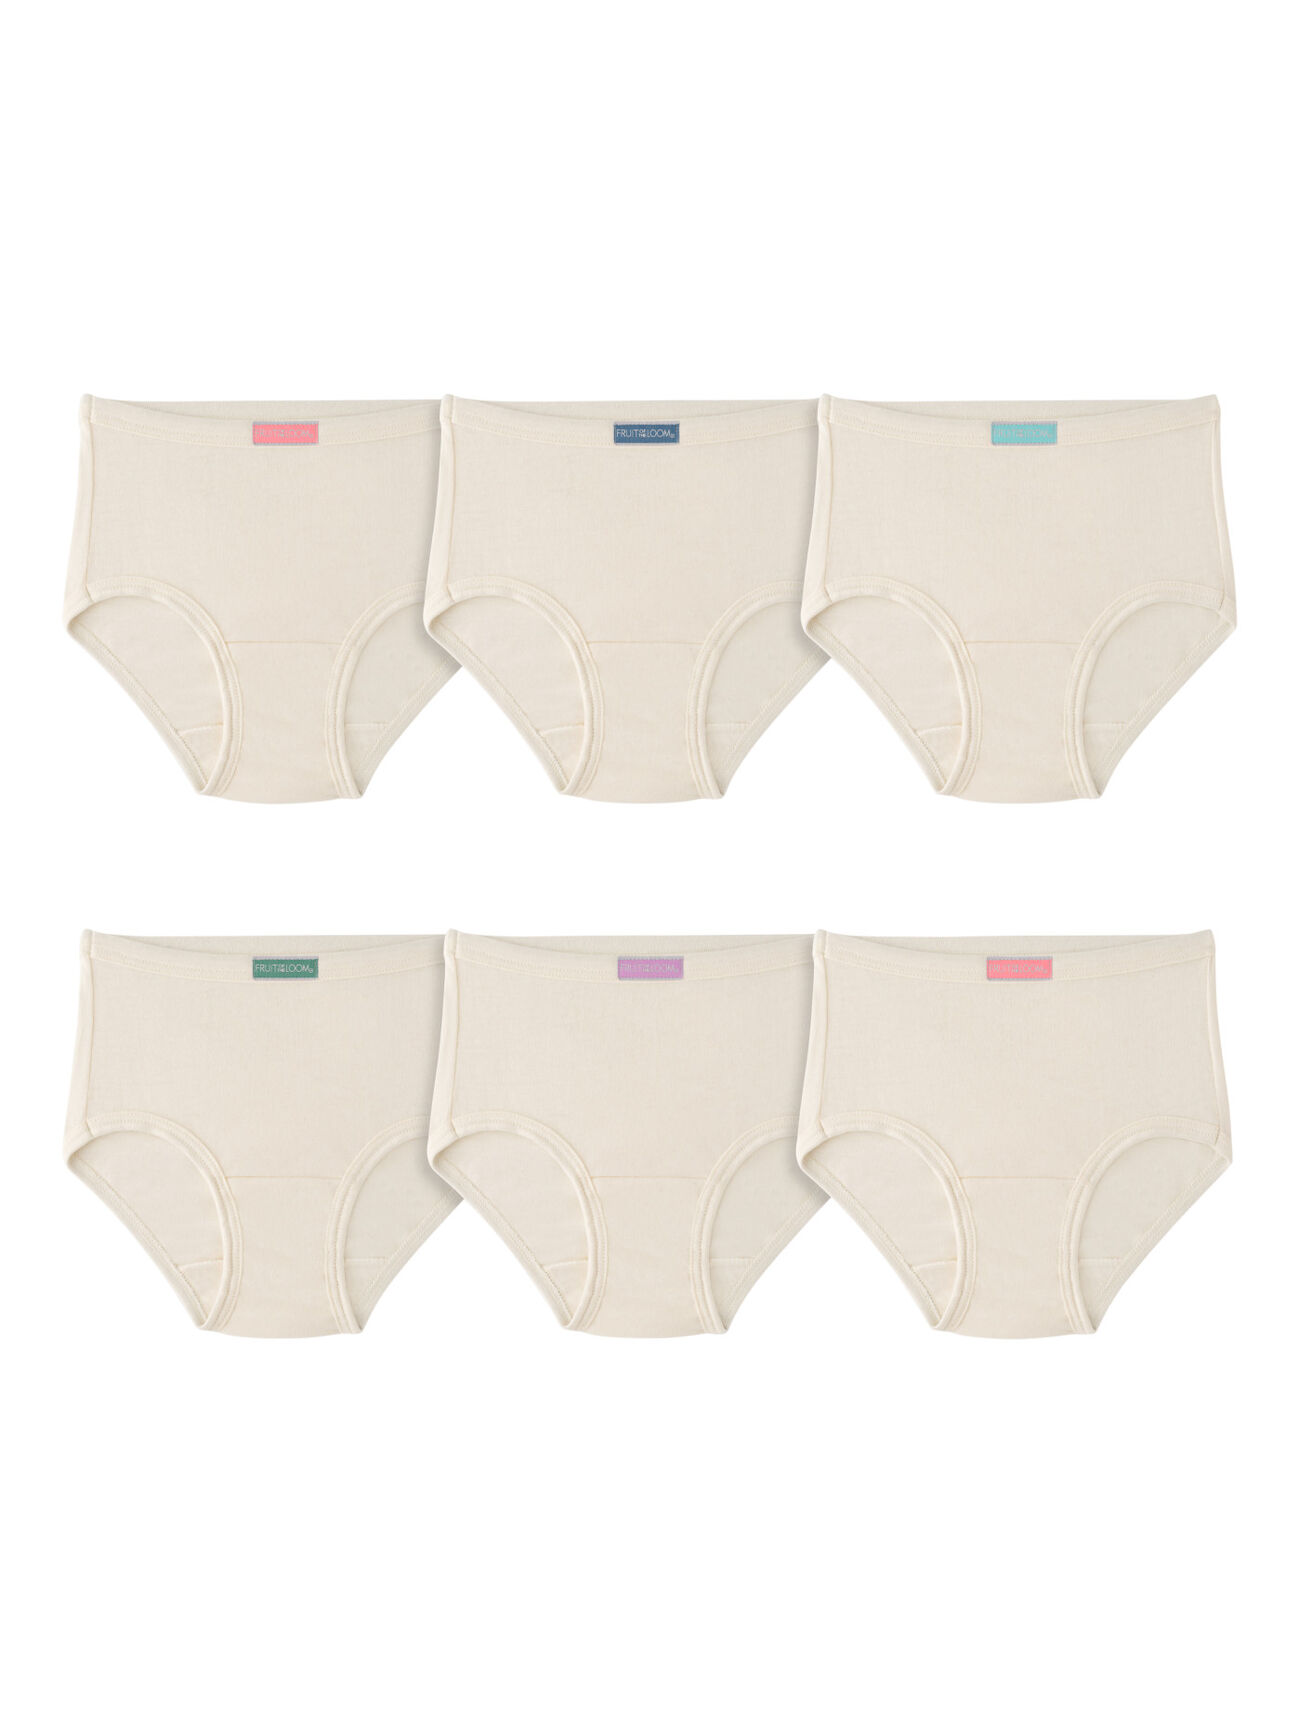 6-Pack Little Girls' 100% Pure Cotton Underwear Toddler Baby Soft